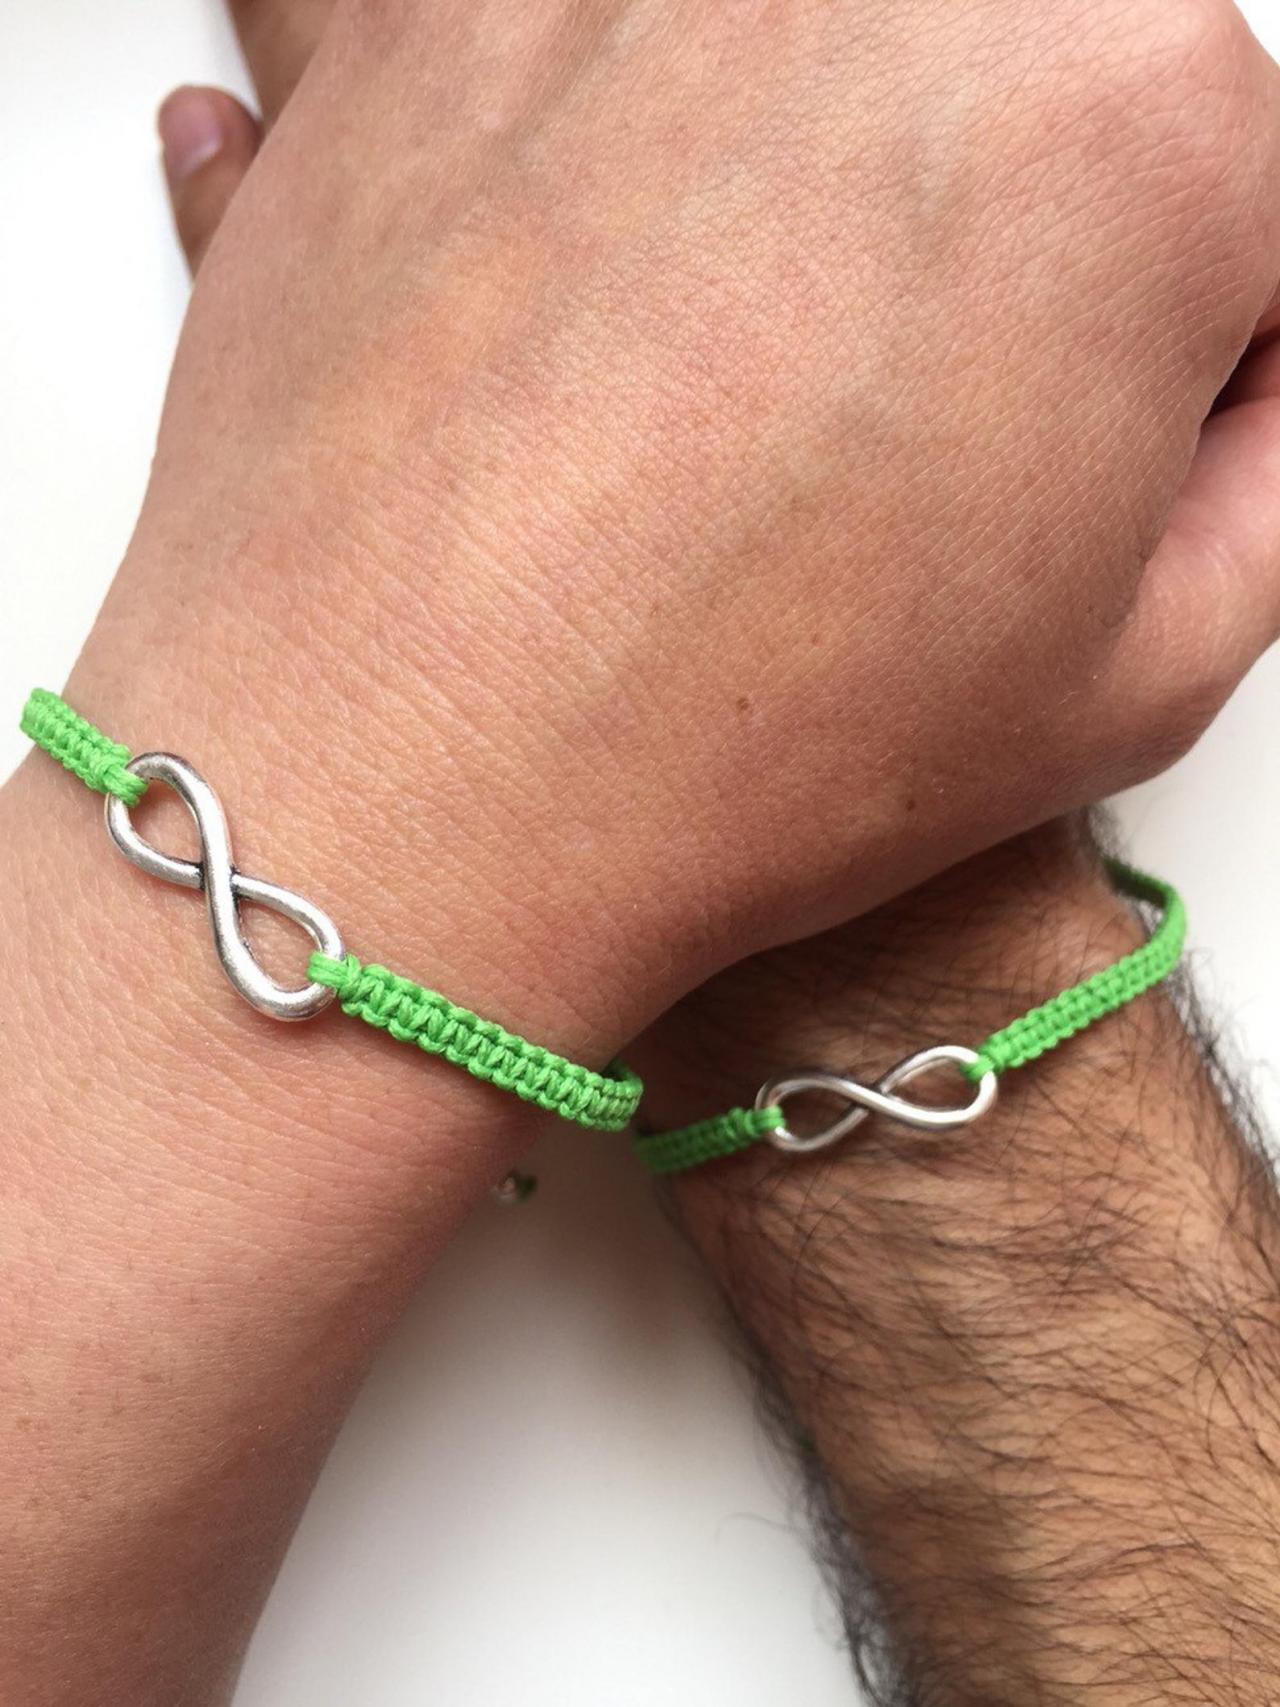 Couples Men Women Bracelets 229- Friendship Macrame Love Cuff Infinity Bracelet Green Cord Gift Adjustable Boyfriend Girlfriend